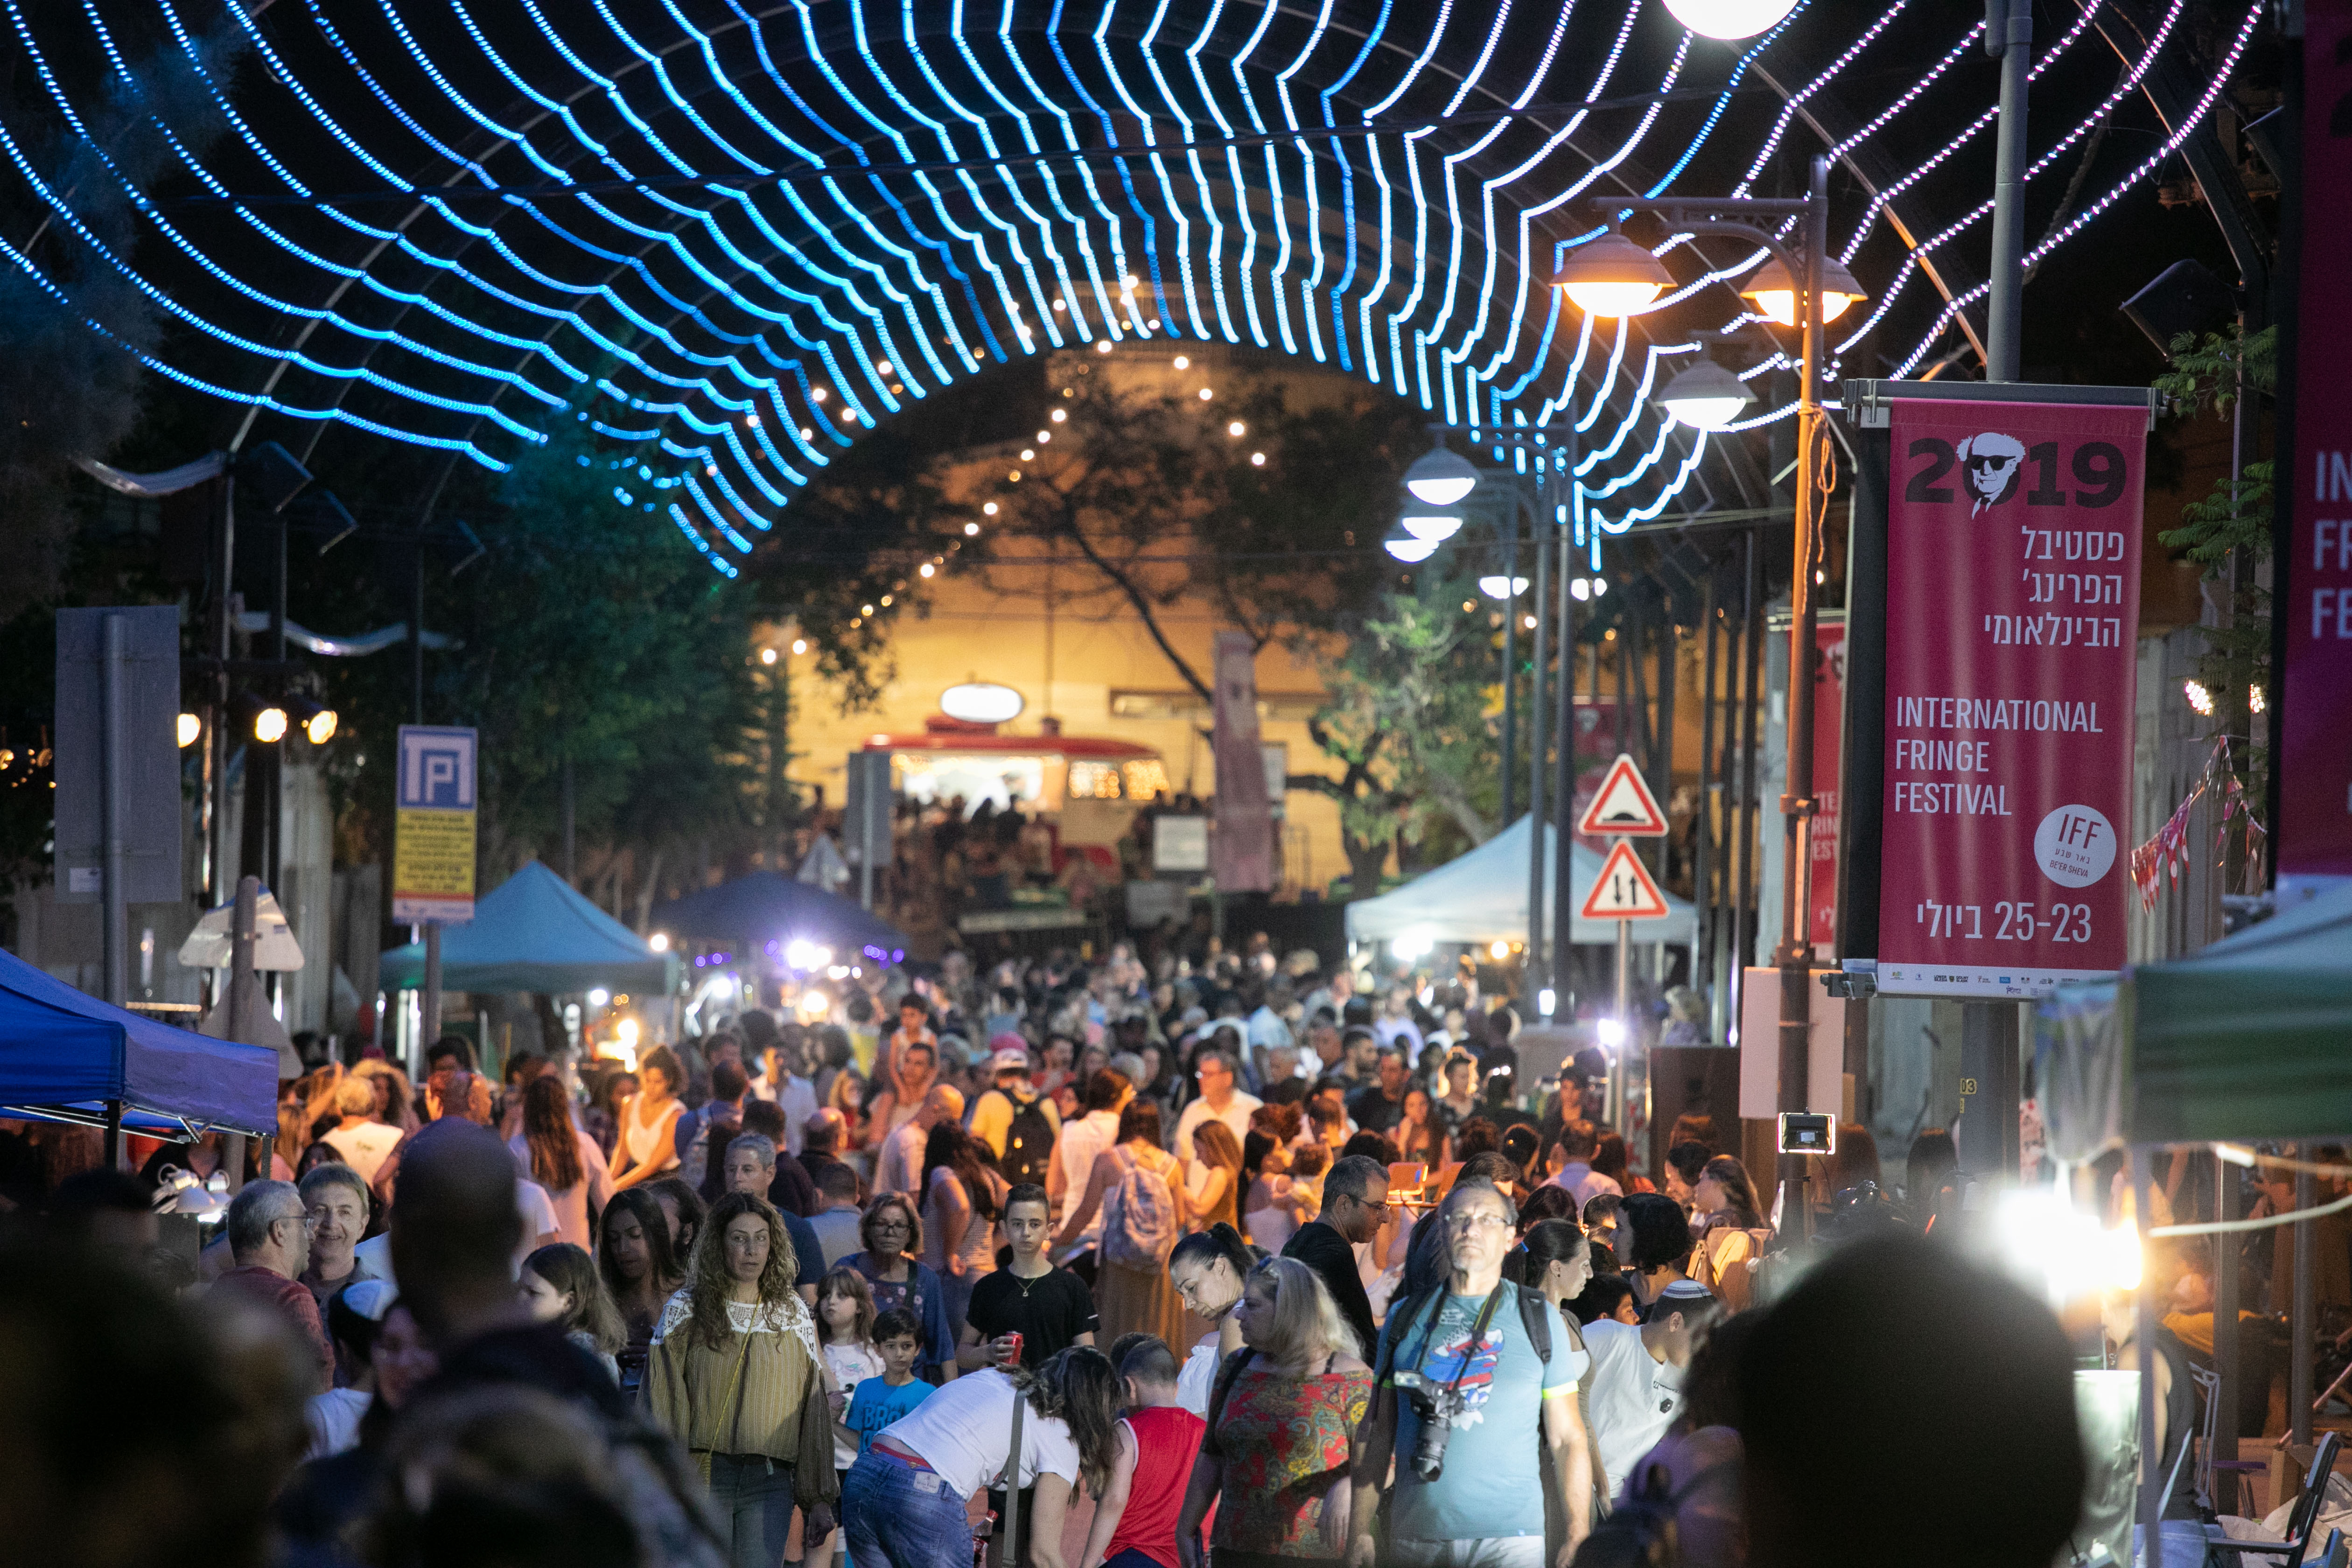 פסטיבל הפרינג' הבינלאומי חוגג 13 בעיר העתיקה באר שבע!